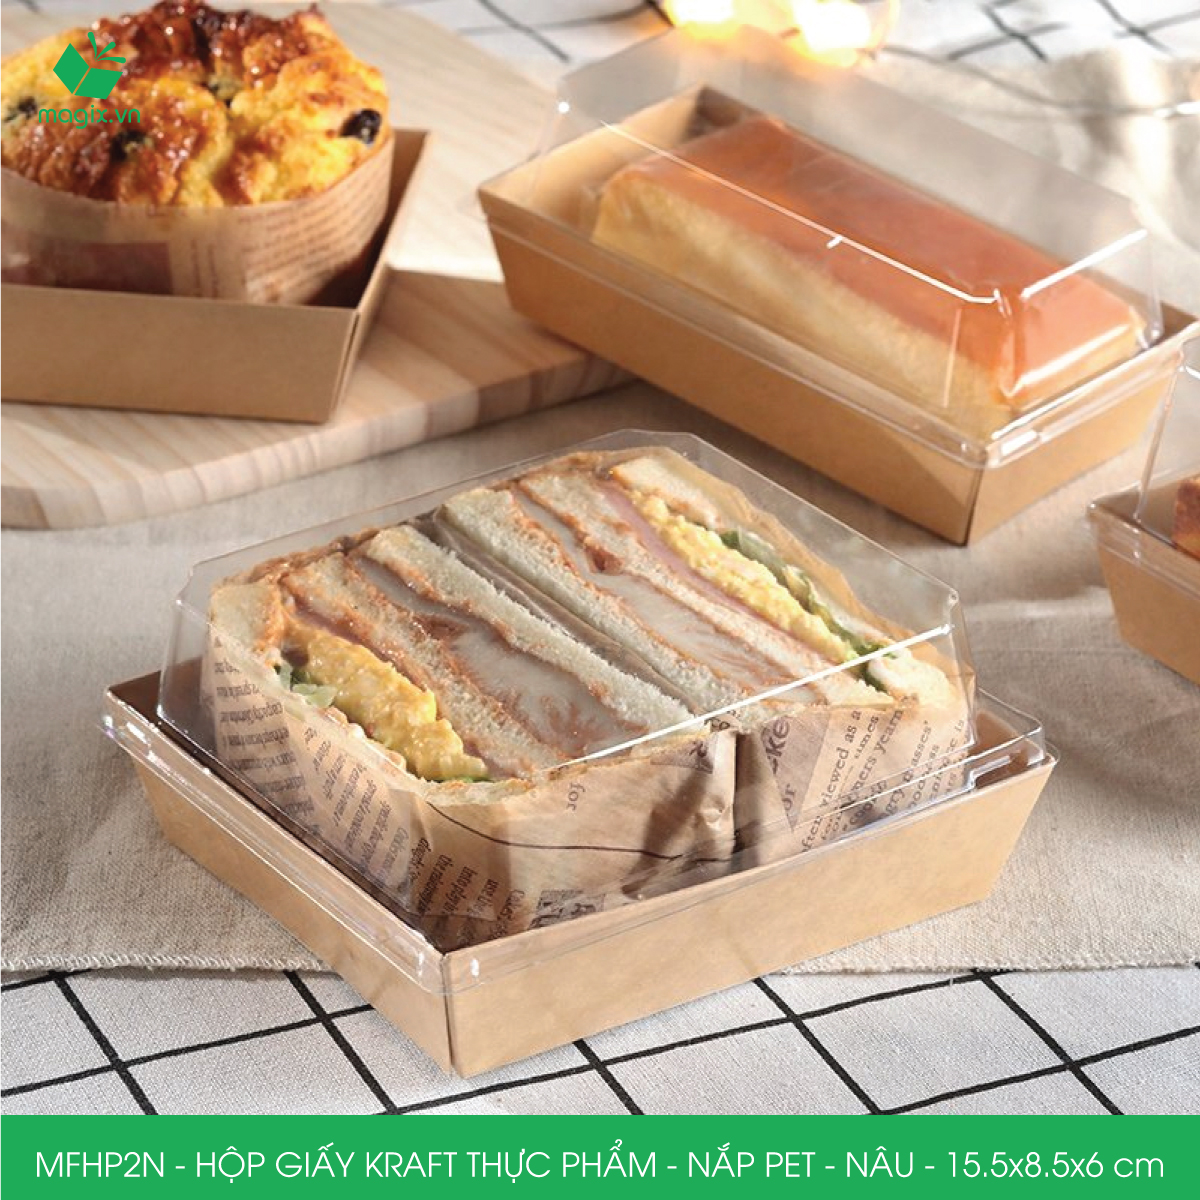 MFHP2N - 15.5x8.5x6 cm - 50 hộp giấy kraft thực phẩm màu nâu nắp Pet, hộp giấy chữ nhật đựng thức ăn, hộp bánh nắp trong